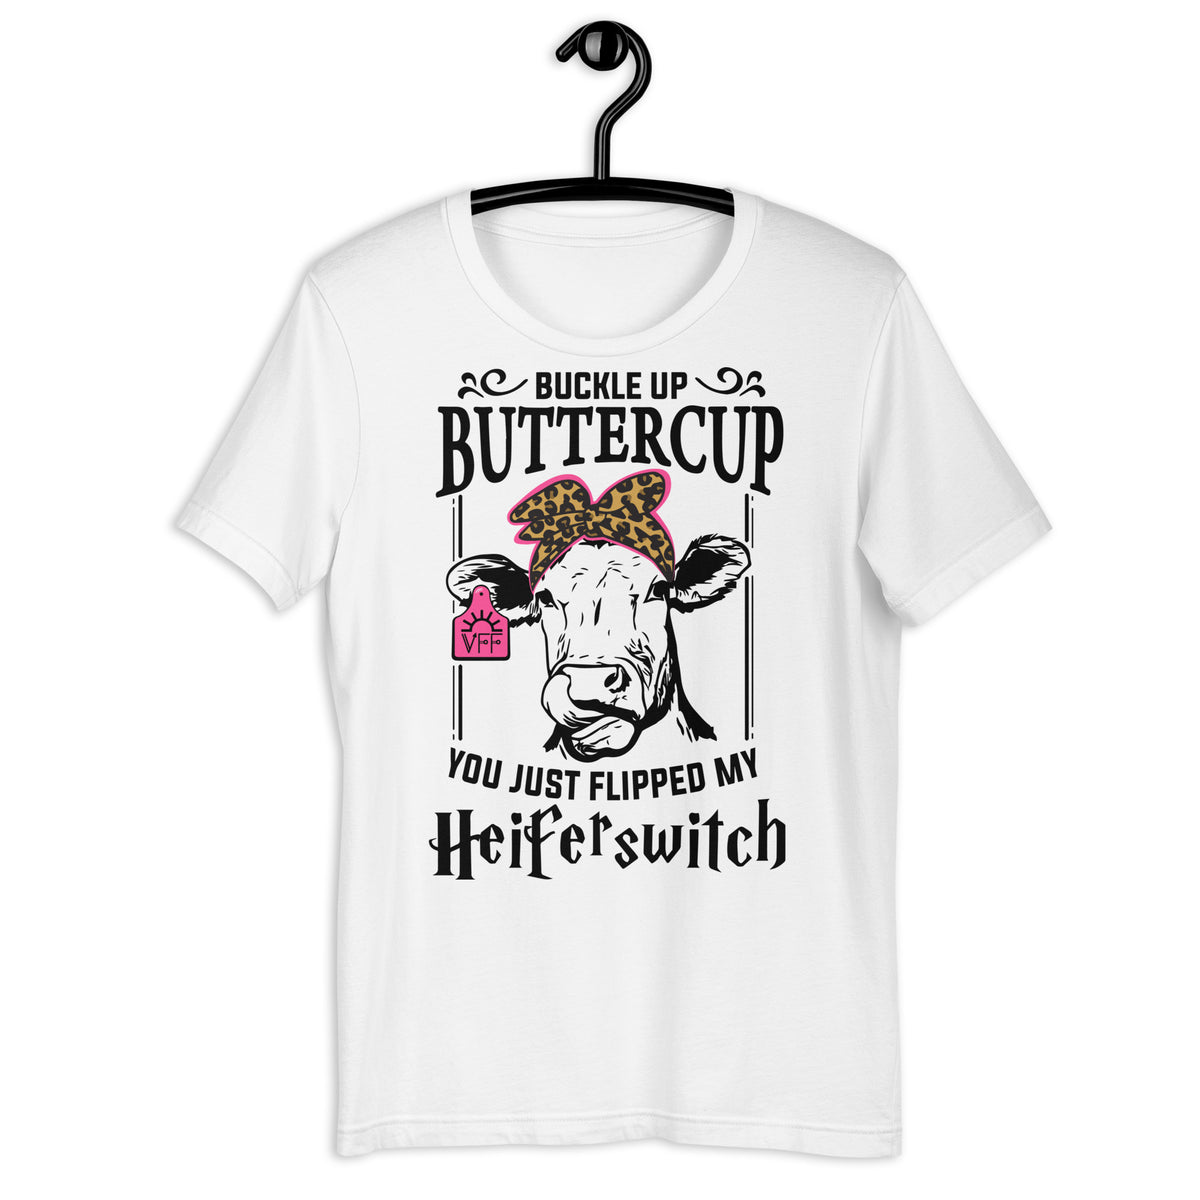 Buckle Up Buttercup Women's T-Shirt